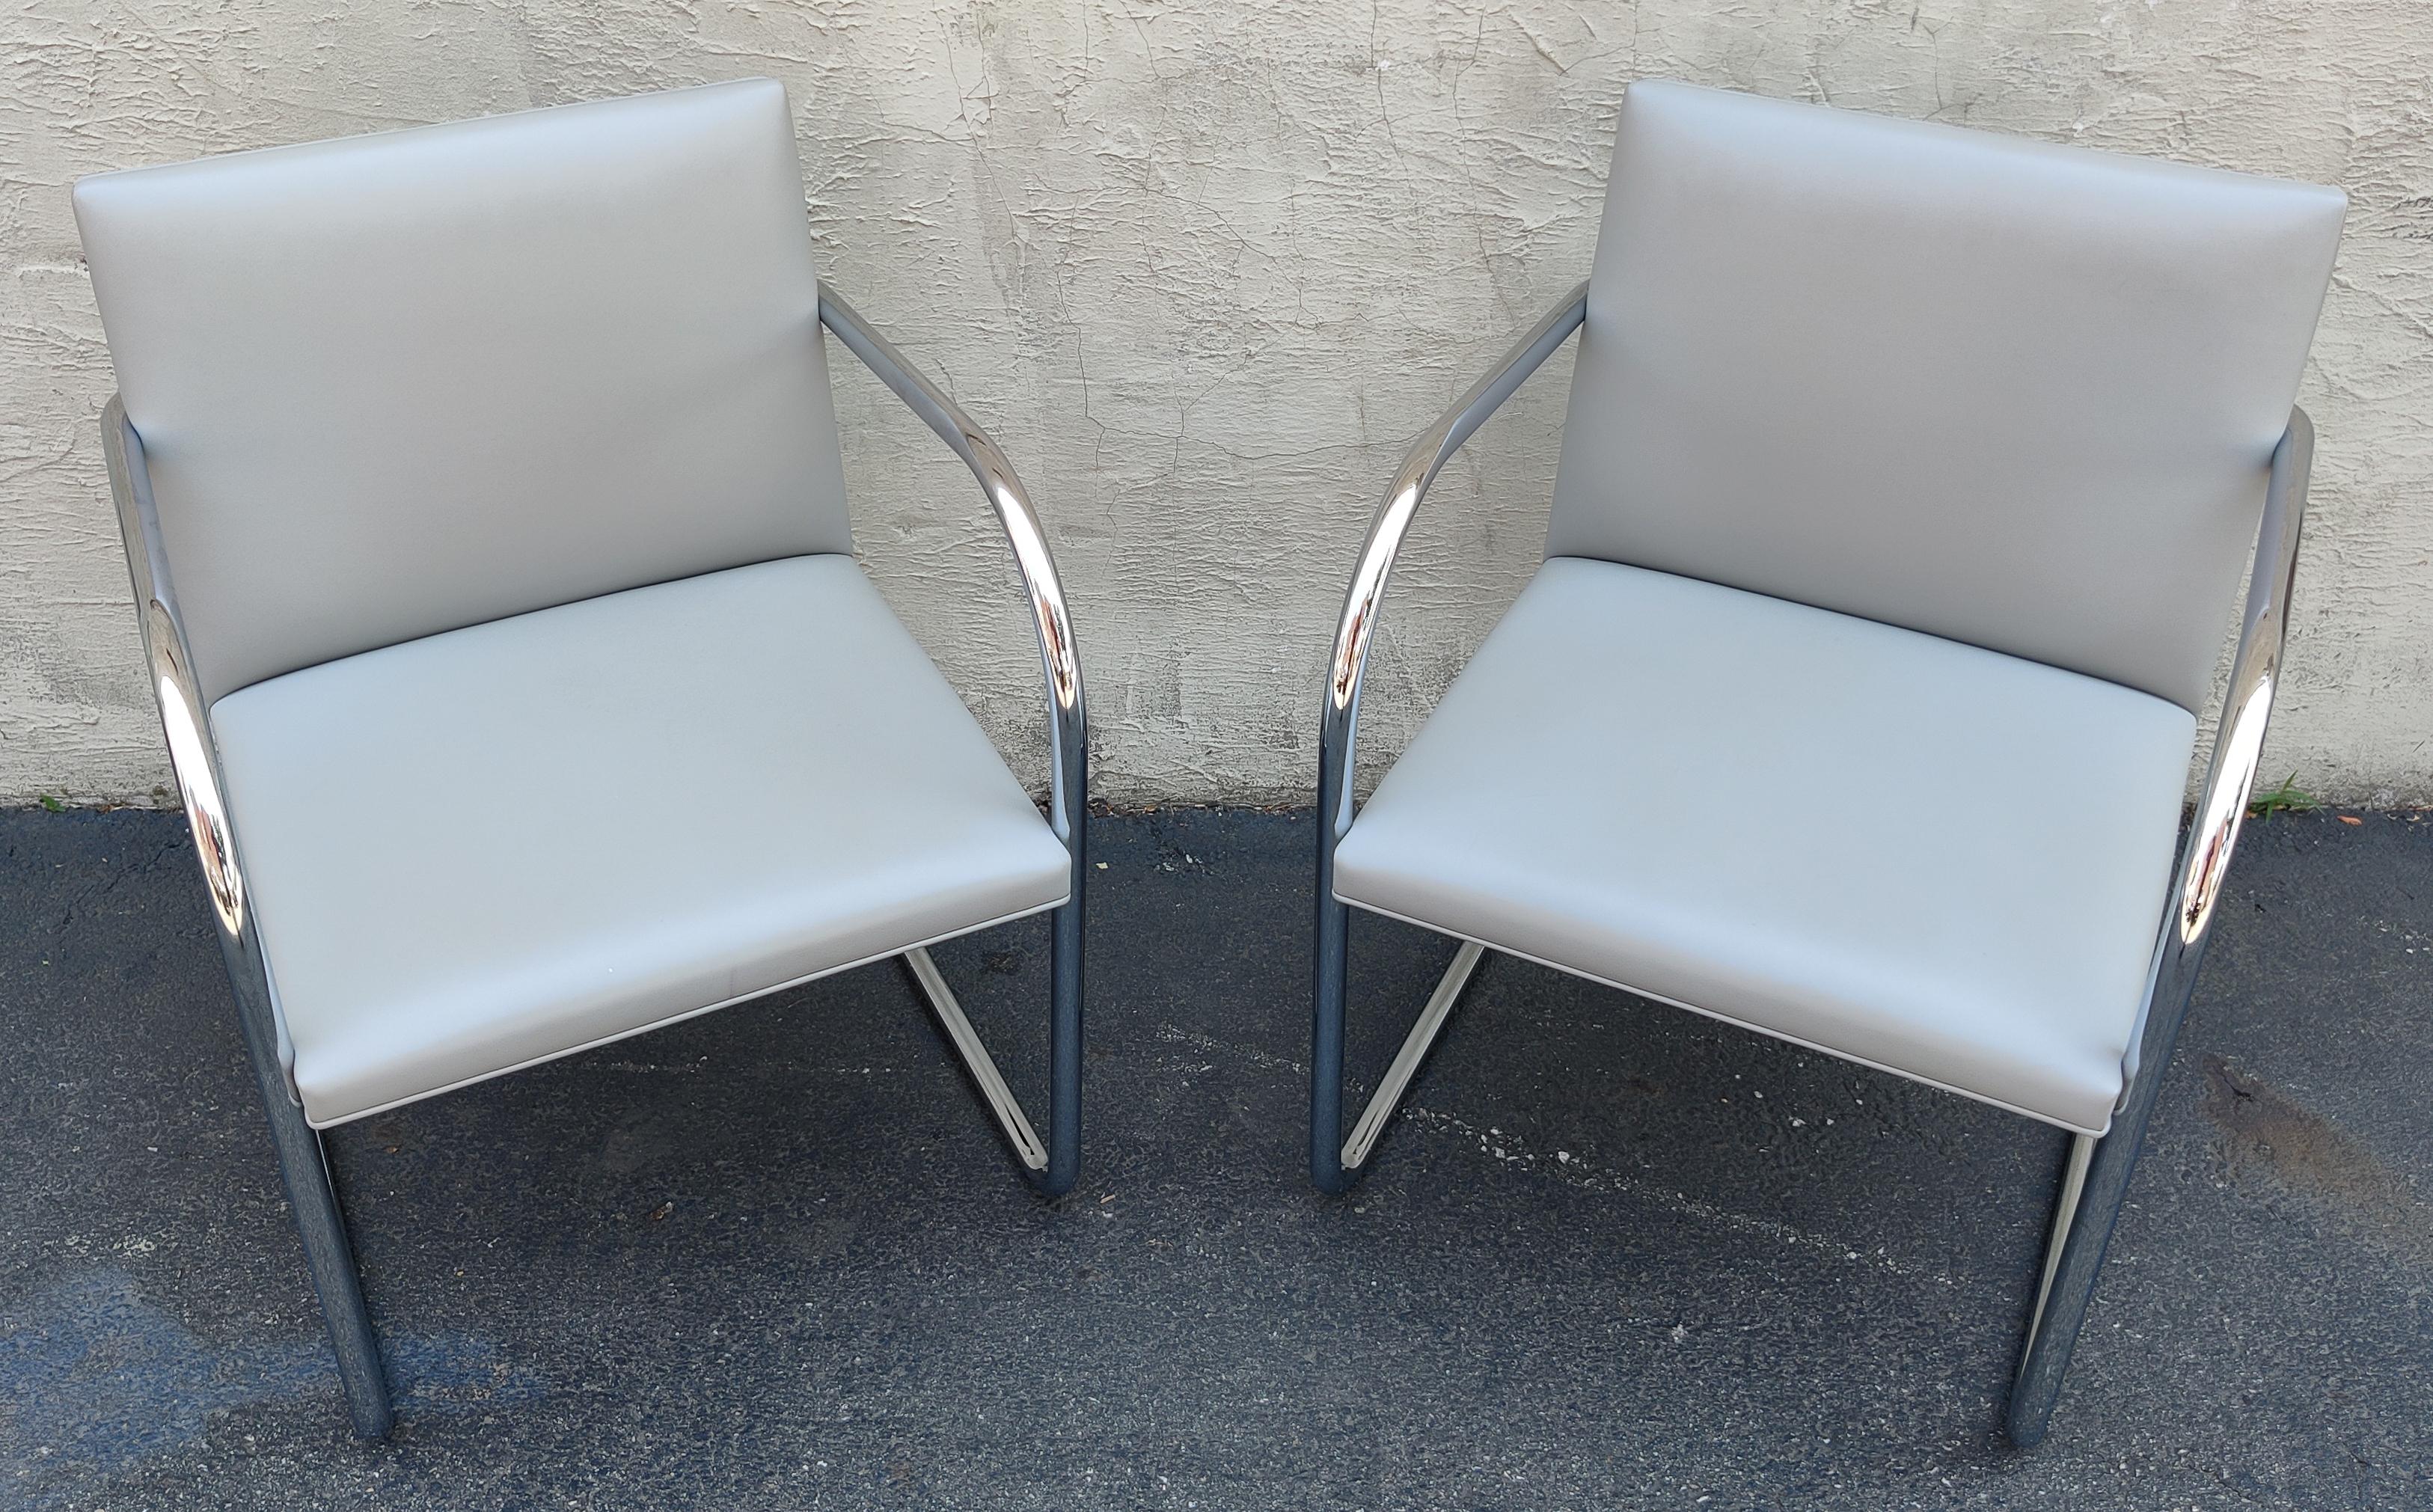 Dieses Paar BRNO-Stühle wurde in den 1930er Jahren von Ludwig Mies van der Rohe entworfen und von Knoll hergestellt. Sie verfügen über ein handverchromtes Stahlrohrgestell und eine Freischwinger-Konstruktion, die den Stuhl schwebend erscheinen